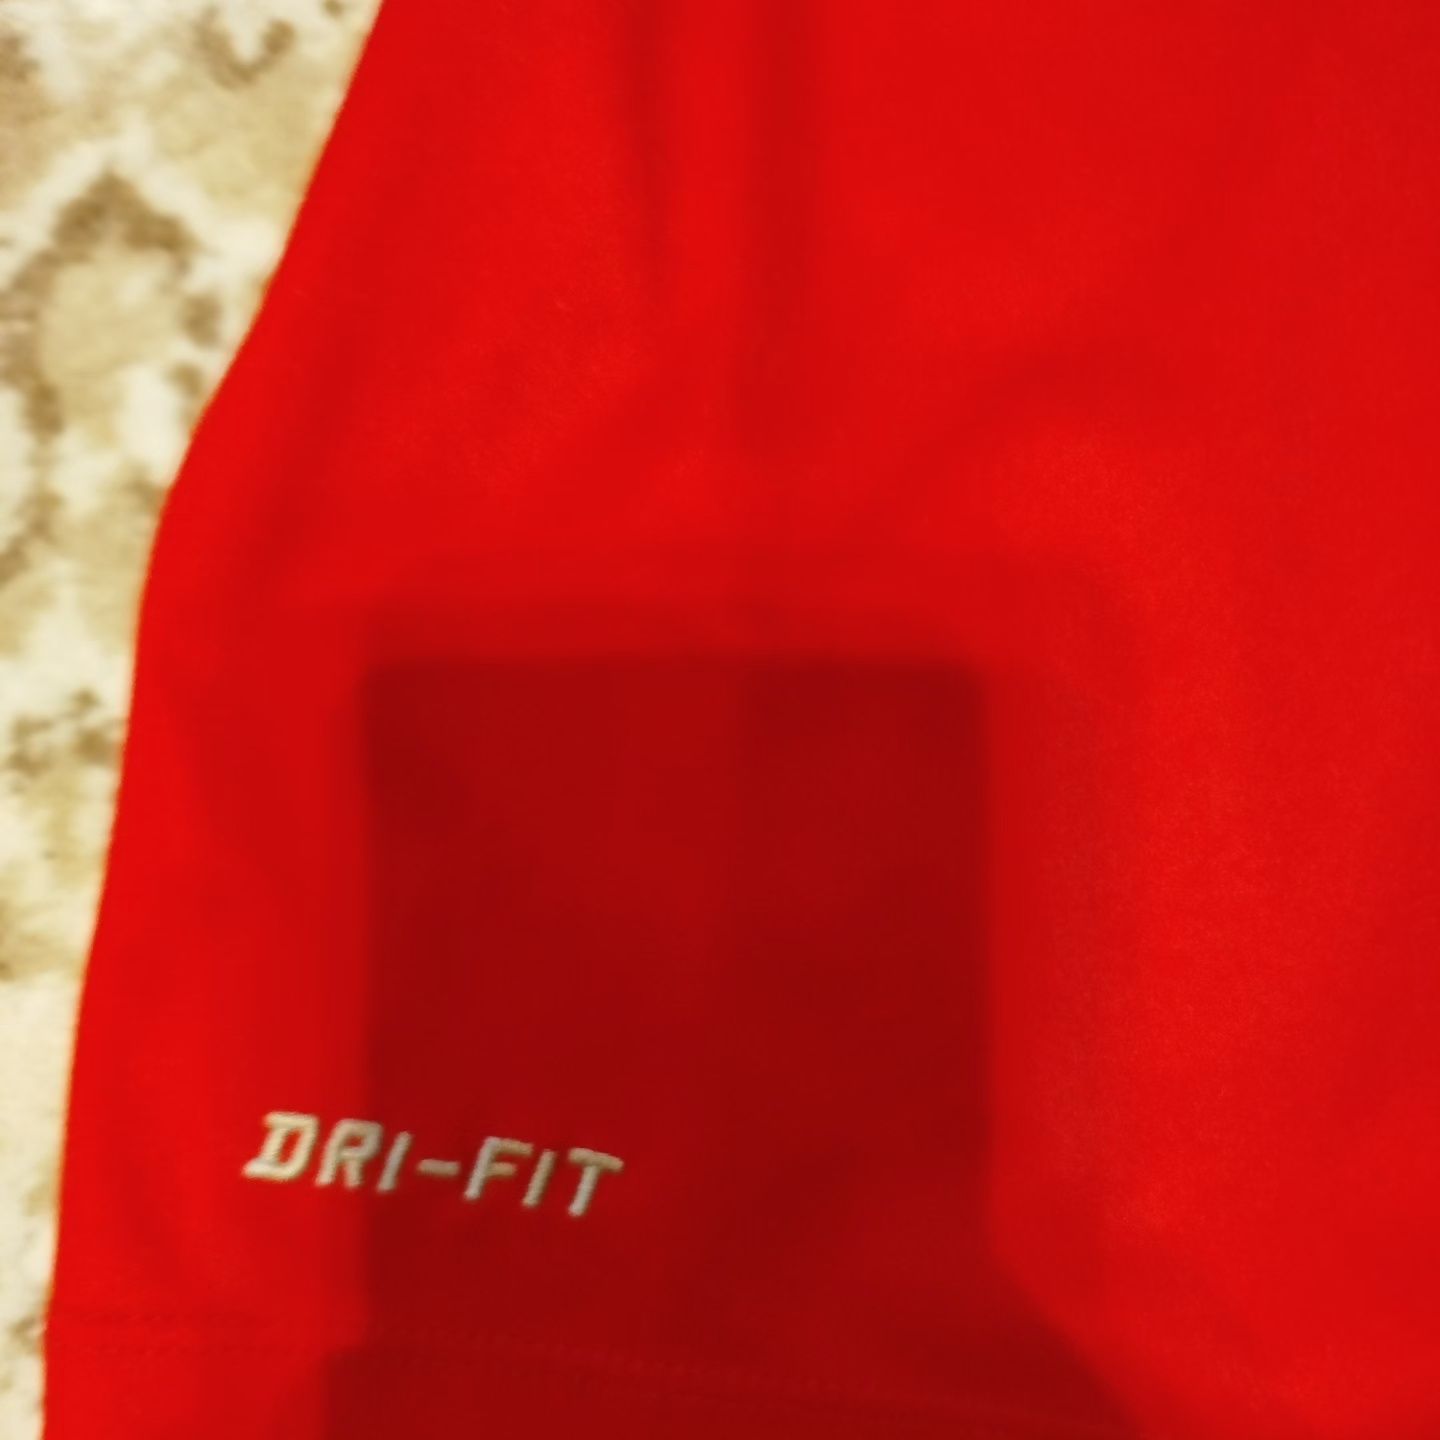 Тениска Nike DRI-FIT Norway national football team